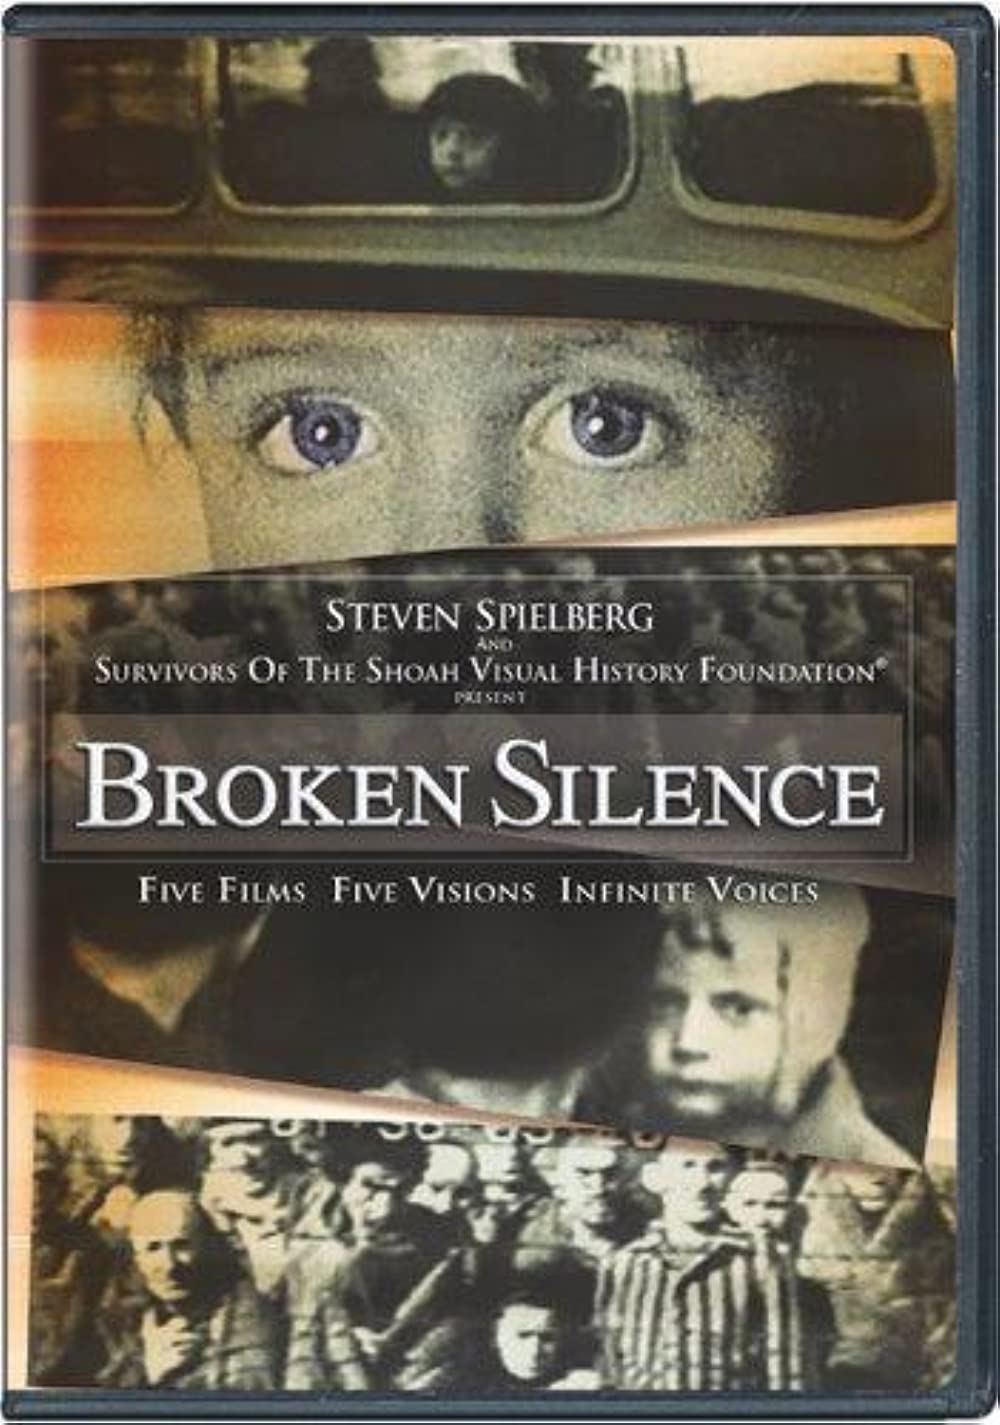 Filmbeschreibung zu Broken Silence